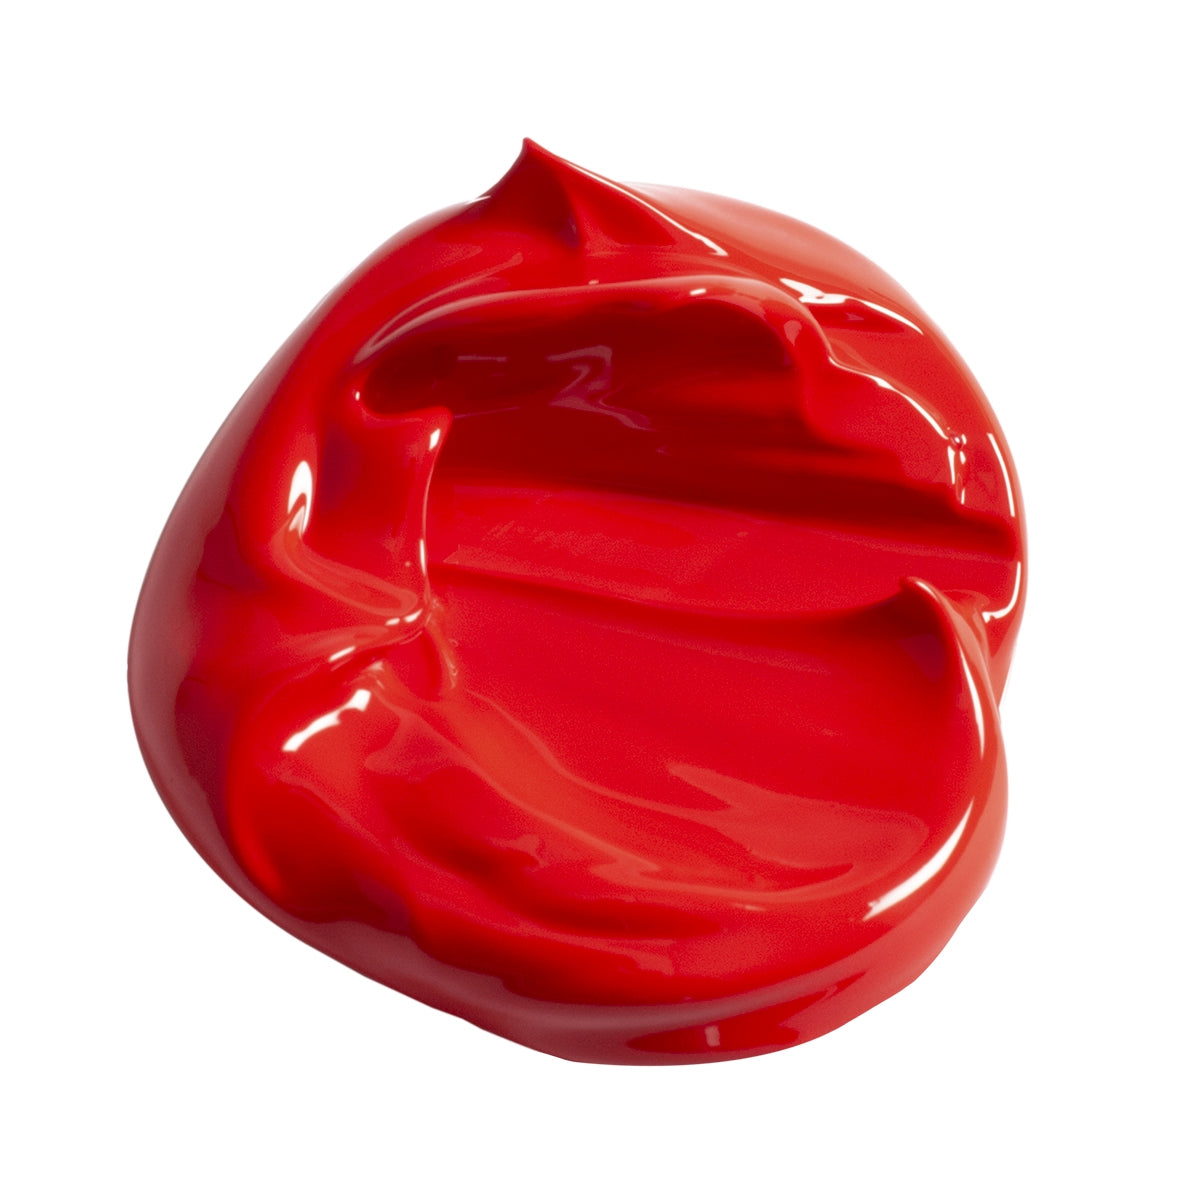 Éléments 500 ml acrylique cadmium rouge / écarlate